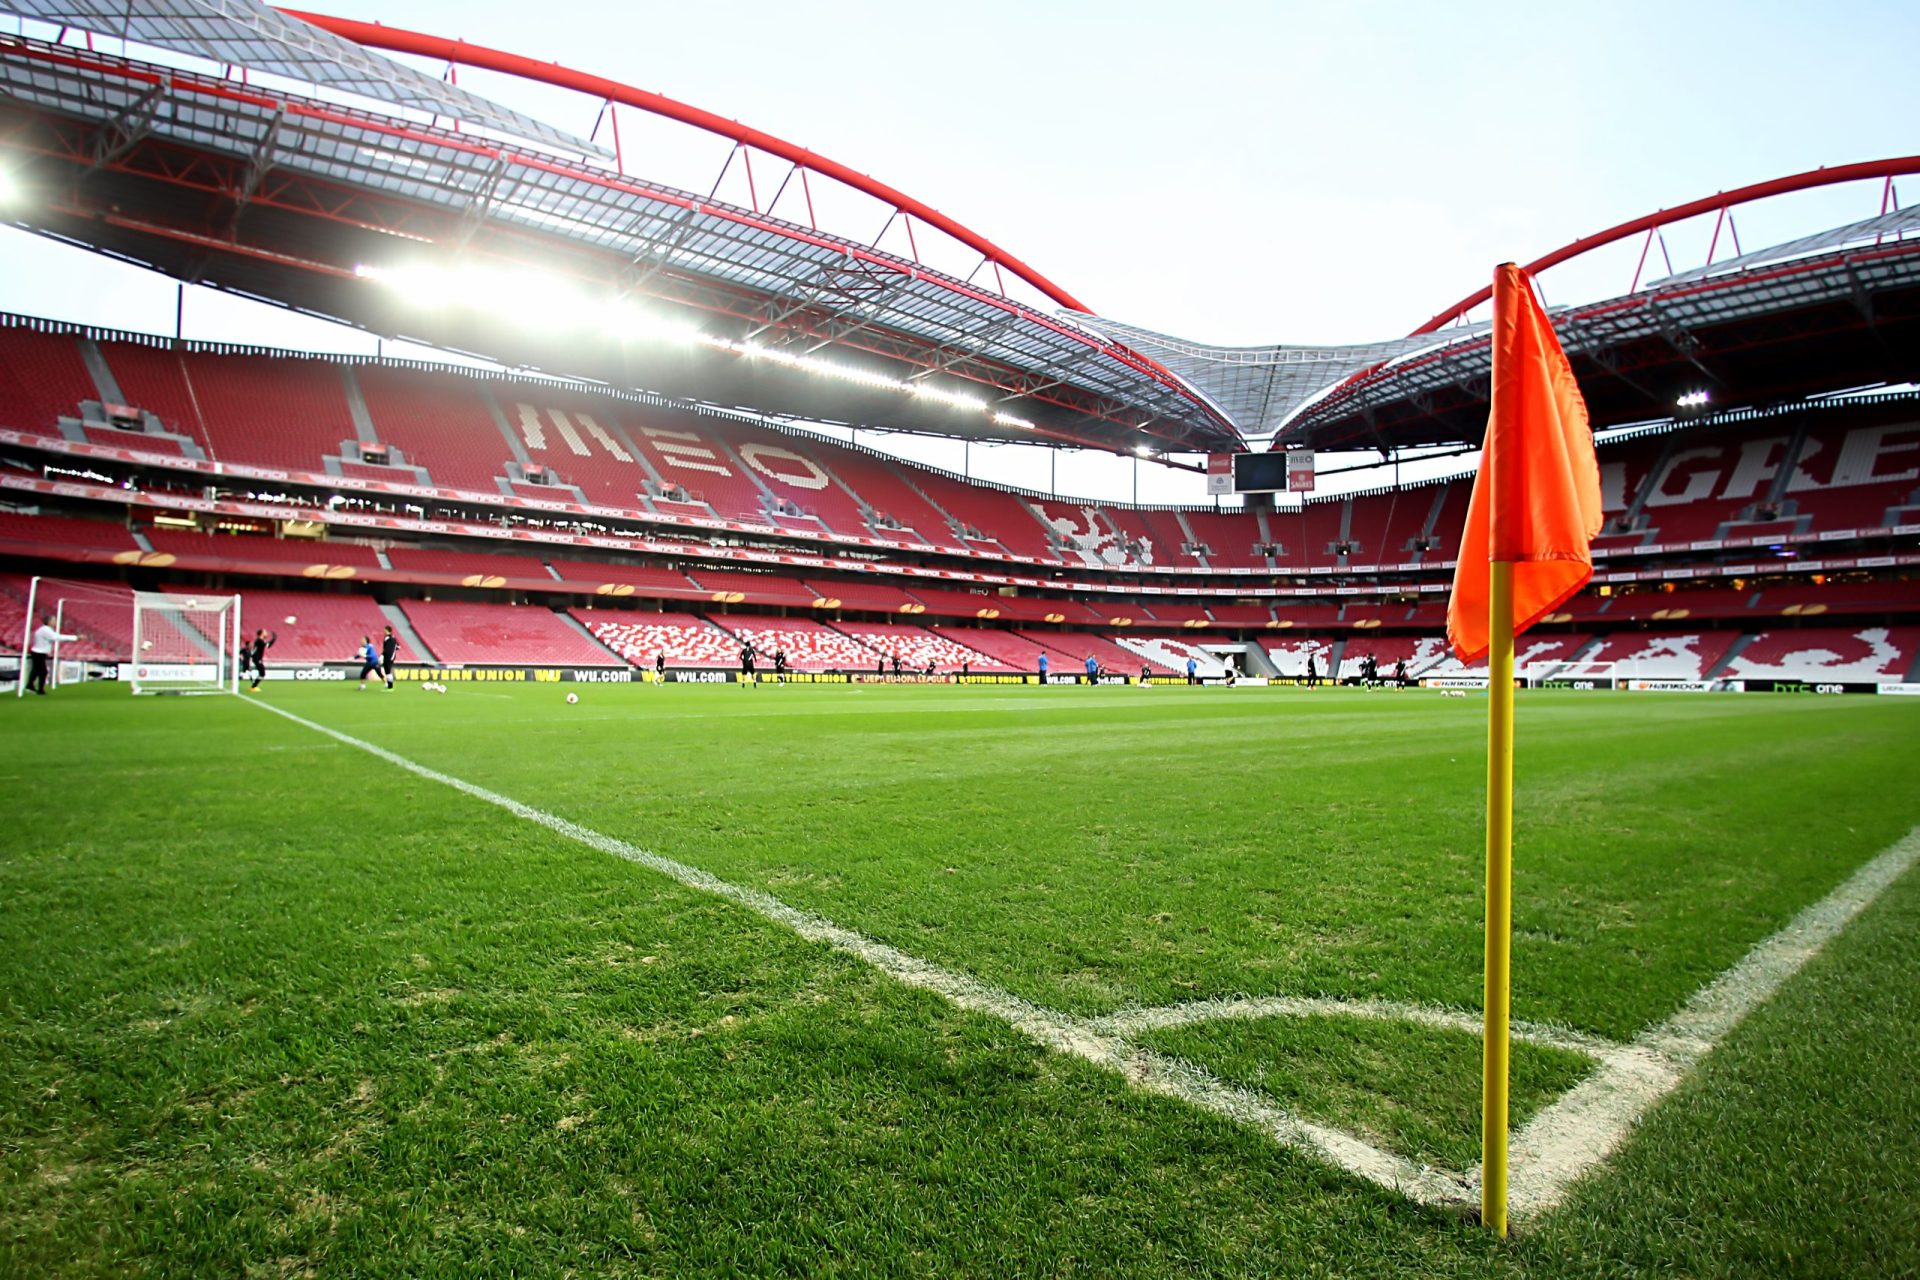 Buscas em clubes de futebol: seis suspeitos constituídos arguidos